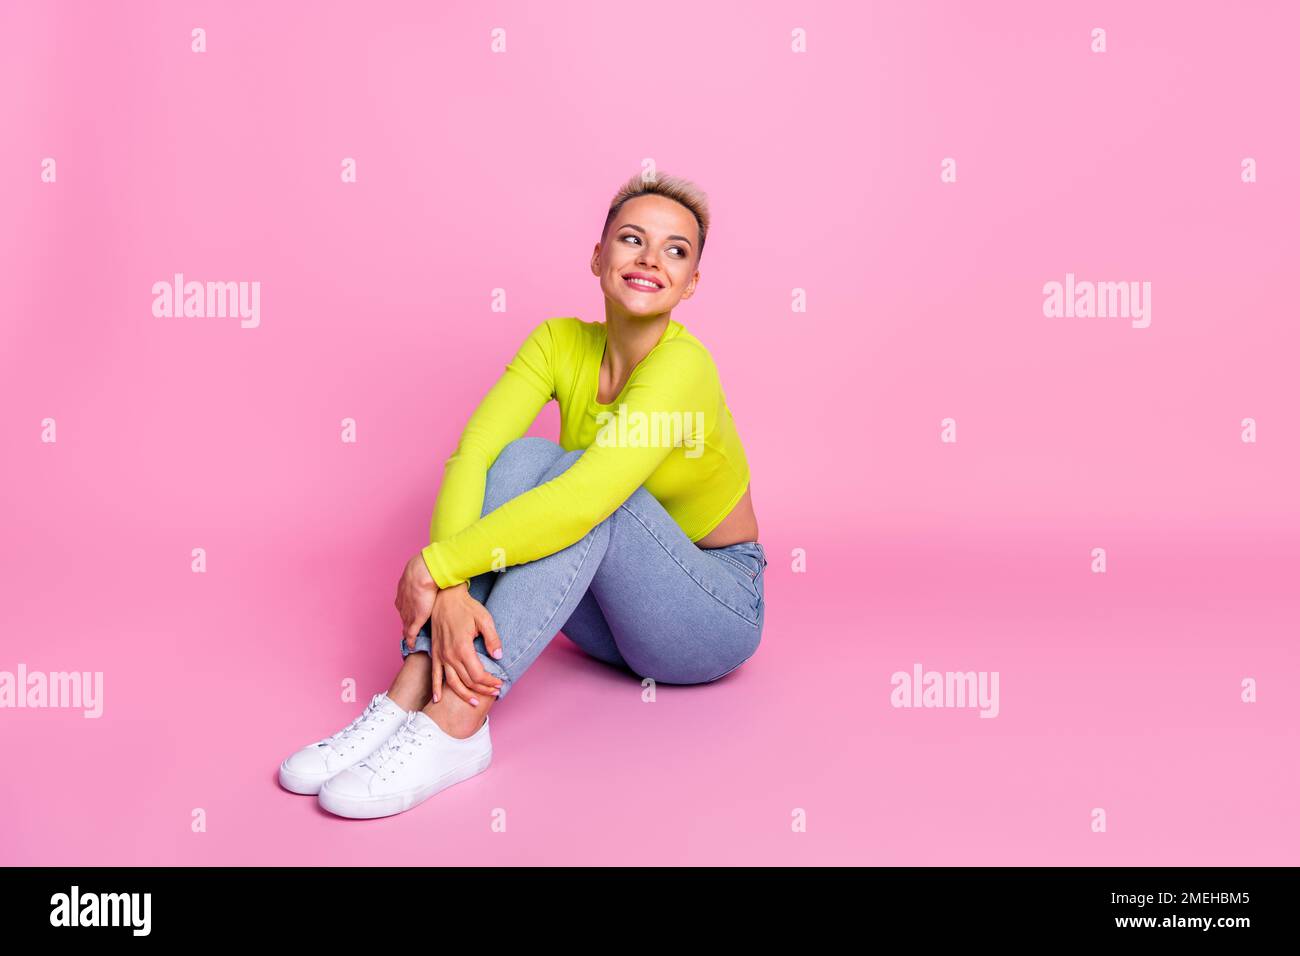 Großes Foto einer attraktiven jungen Frau, die sich im Sitzen die Knie umarmt und leer aussieht elegantes gelbes Outfit isoliert auf pinkfarbenem Hintergrund Stockfoto